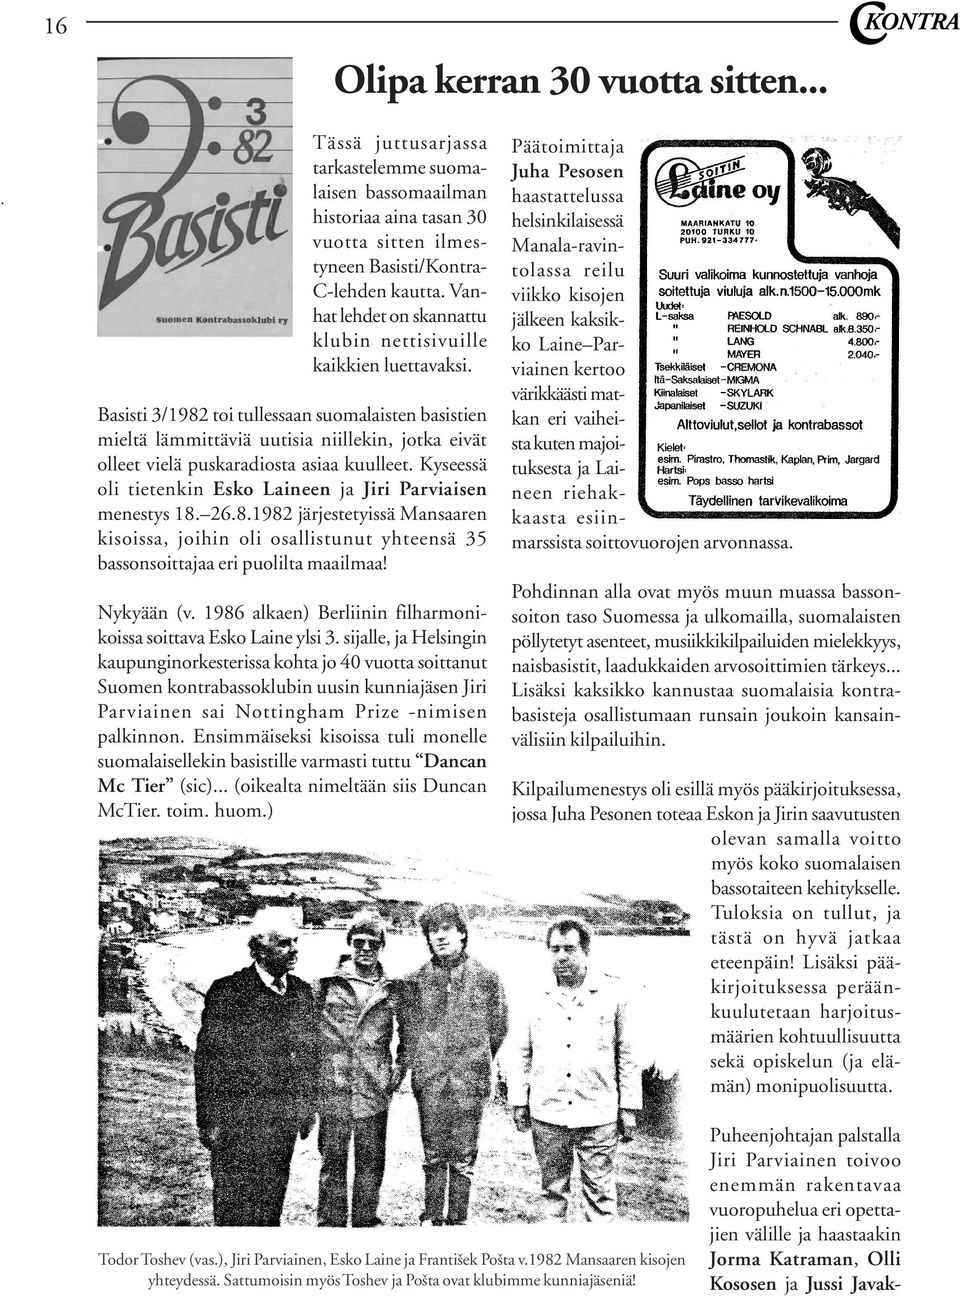 Basisti 3/1982 toi tullessaan suomalaisten basistien mieltä lämmittäviä uutisia niillekin, jotka eivät olleet vielä puskaradiosta asiaa kuulleet.